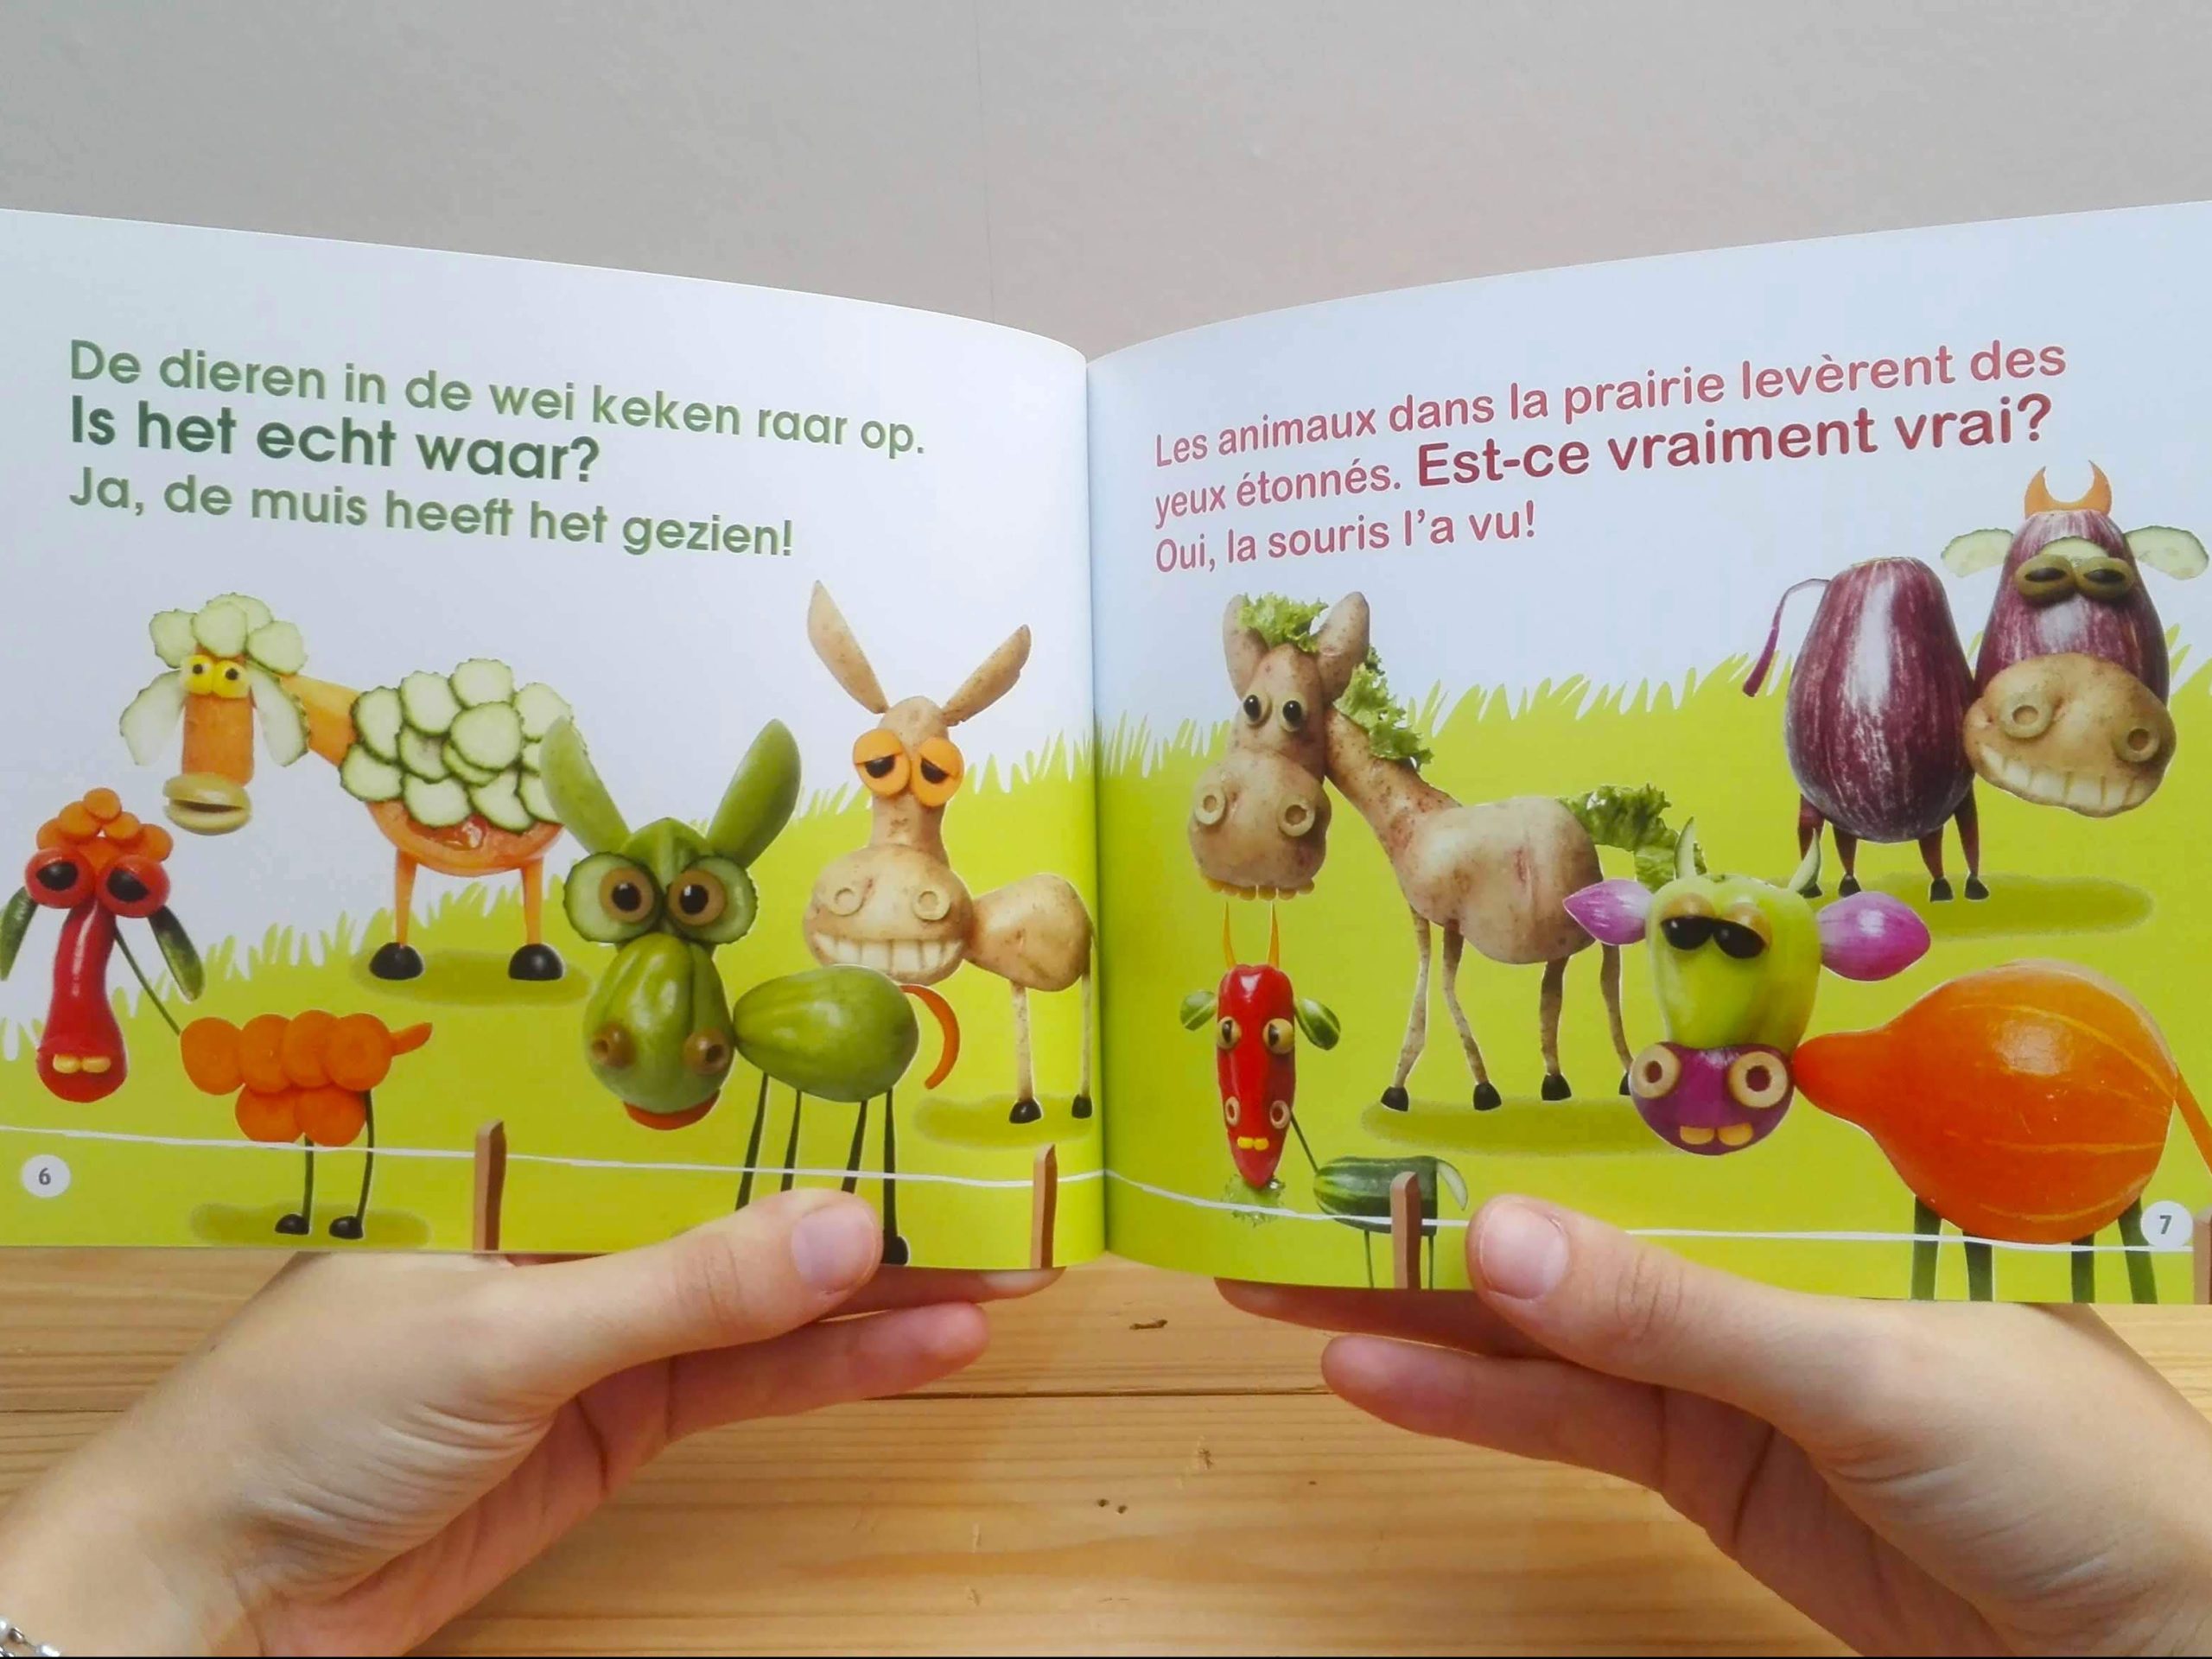 Groot nieuws - pagina met Frans - tweetalig kinderboek van nik-nak